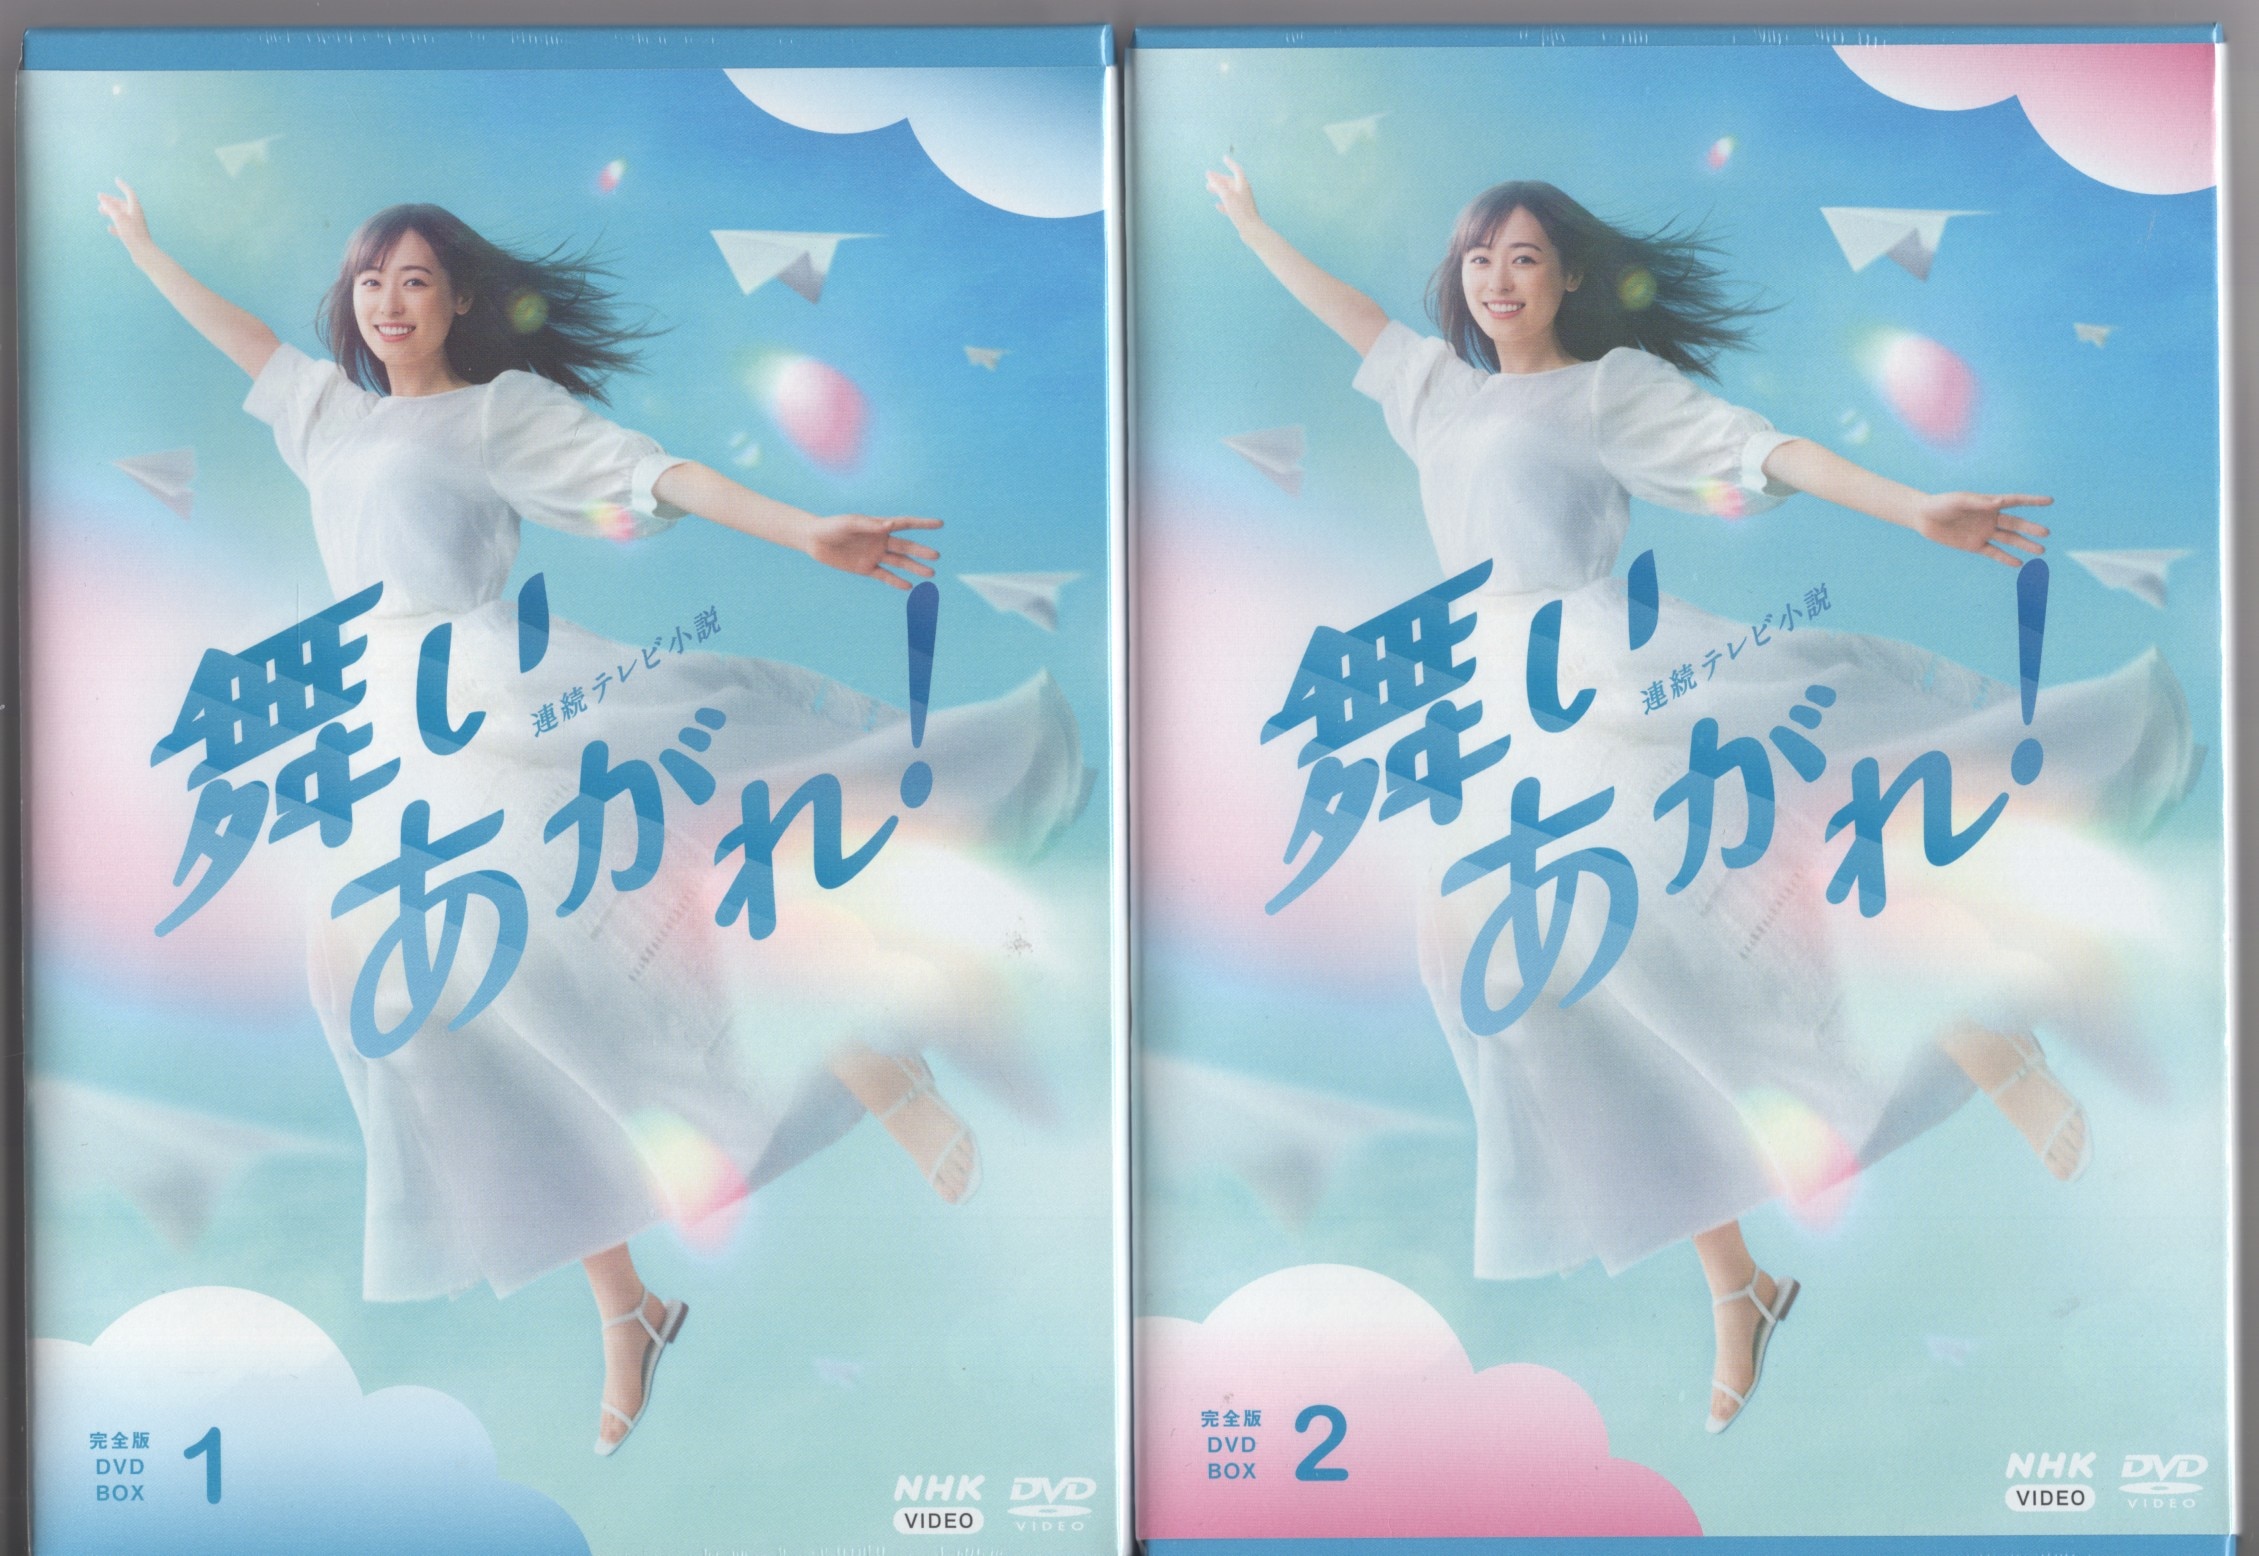 連続テレビ小説 舞いあがれ! 完全版 DVD BOX 1 2 3 - 邦画・日本映画